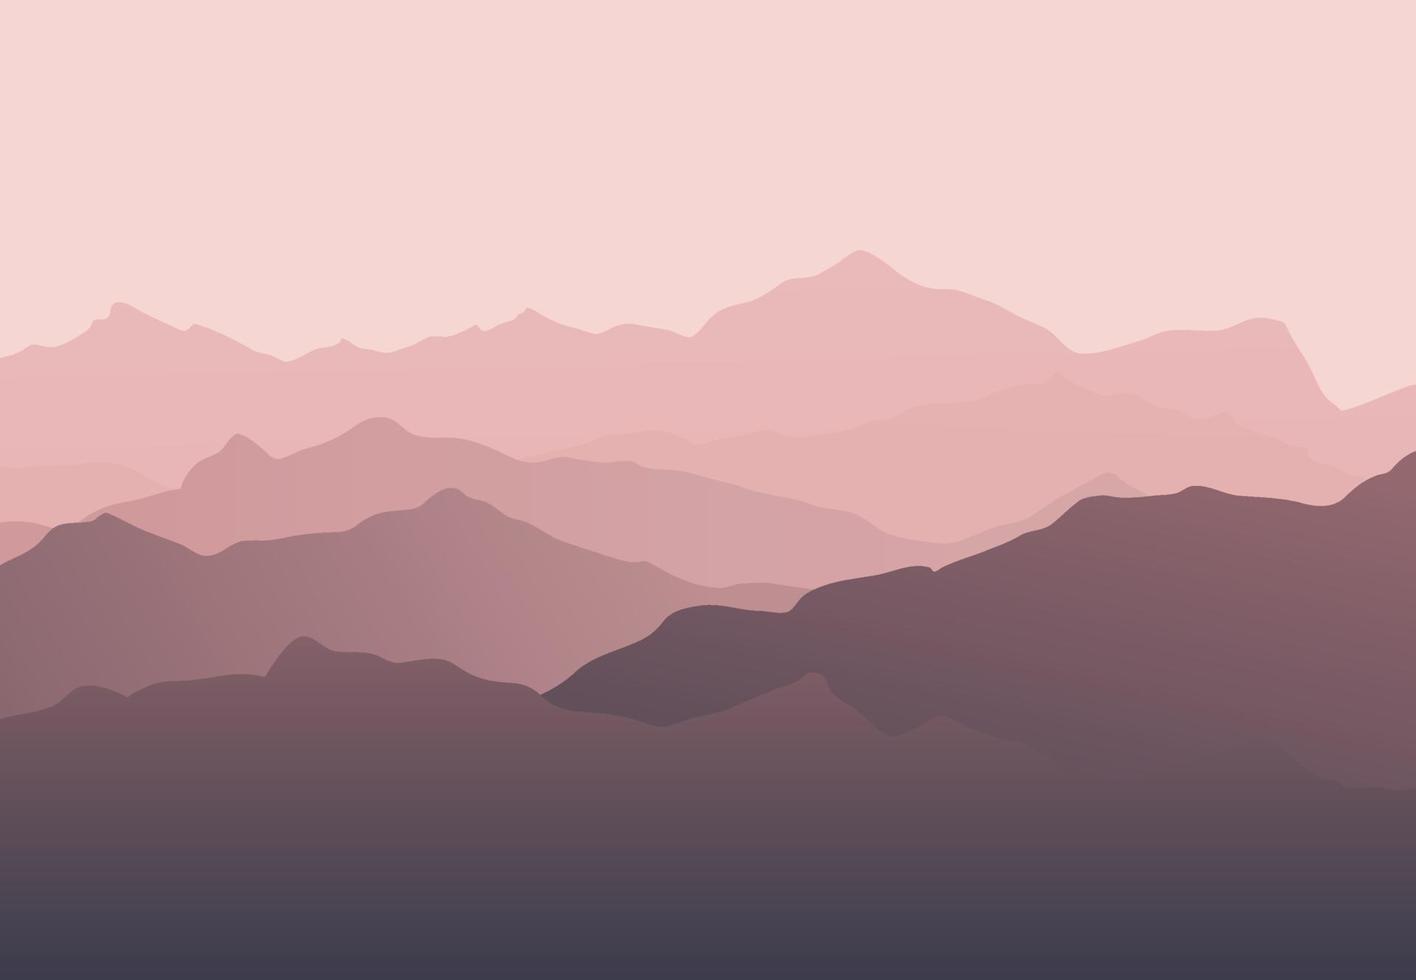 hermoso paisaje de silueta de montaña rosa con niebla y amanecer y atardecer en el fondo de las montañas. concepto de senderismo y actividades al aire libre. vector. bueno para papel tapiz, banner del sitio, portada, afiche vector